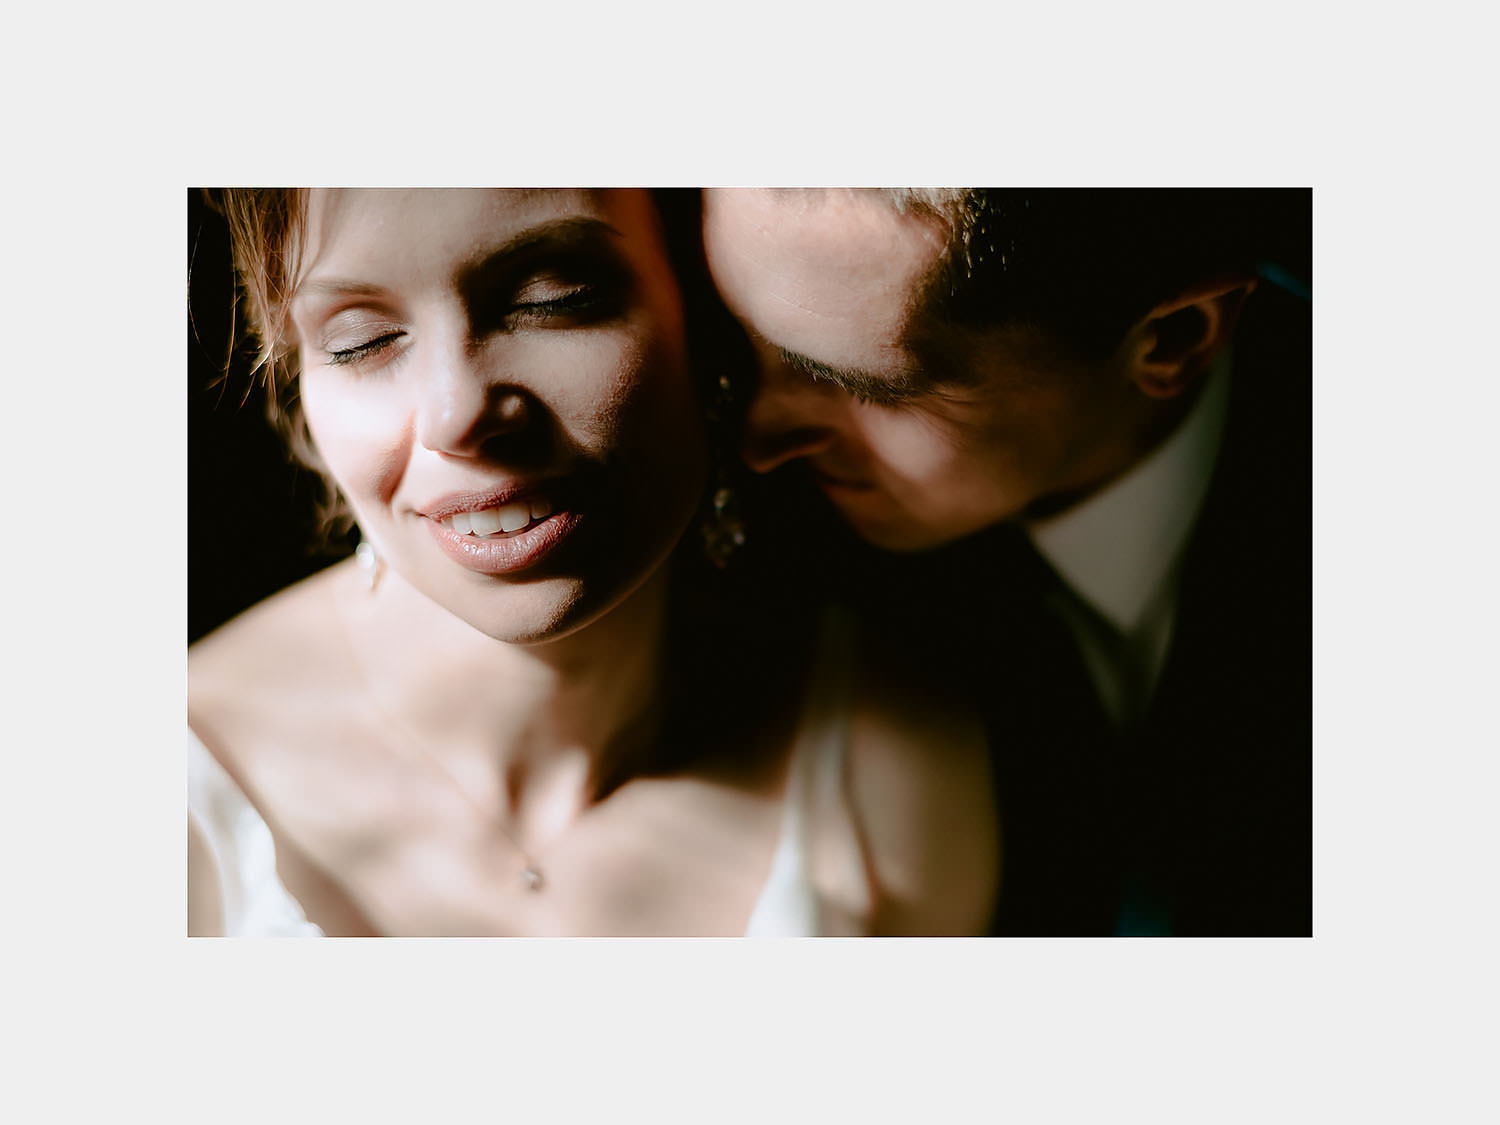 wedding photographer venice elopement intimate ccouple portrait session photos